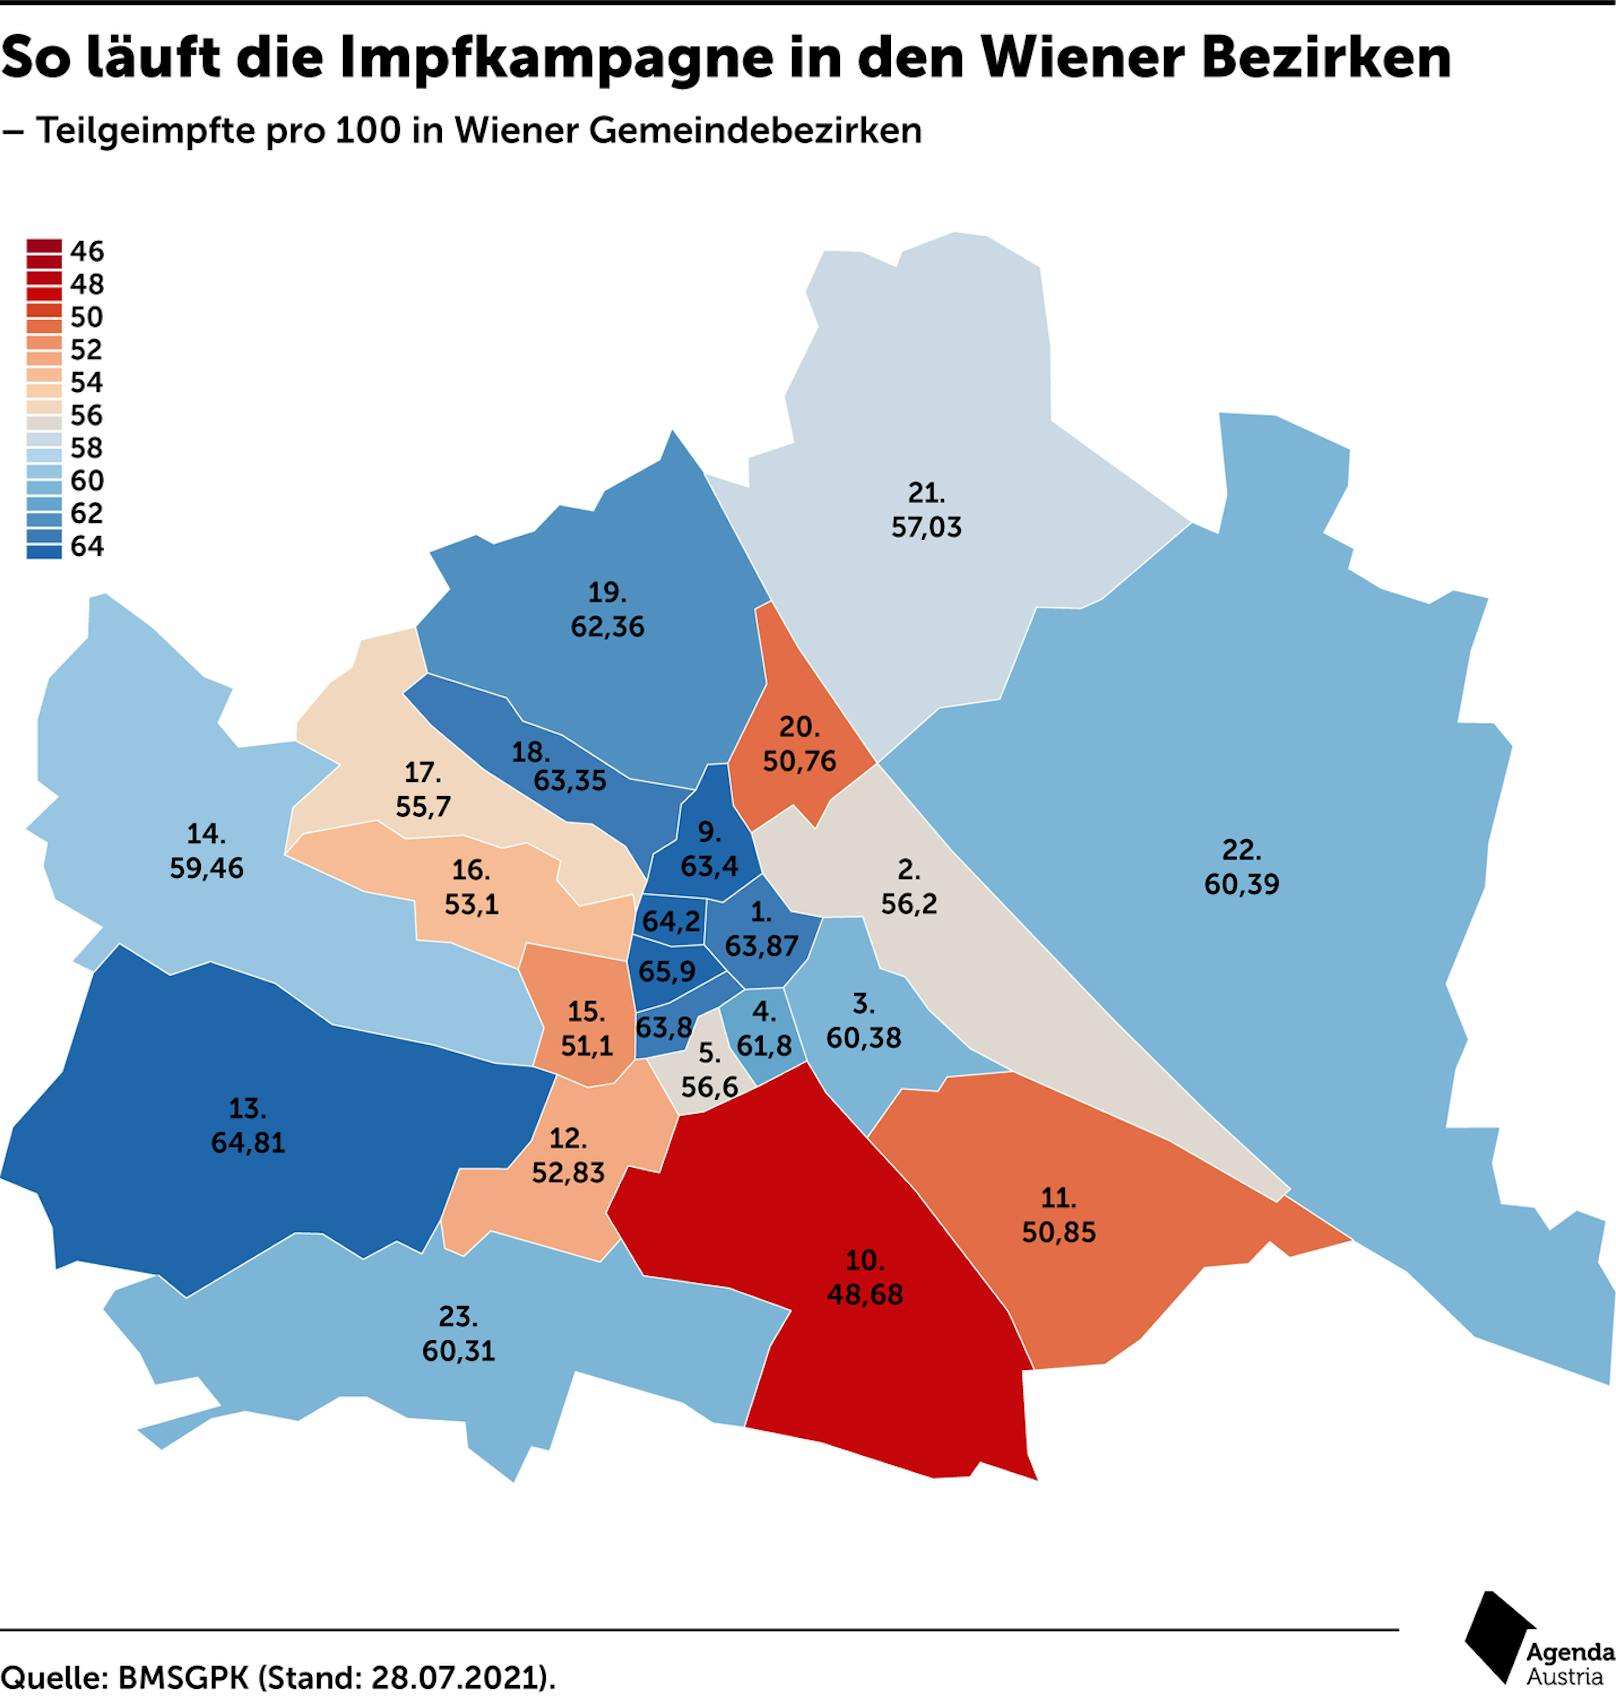 So läuft die Impfkampagne in den Wiener Bezirken.